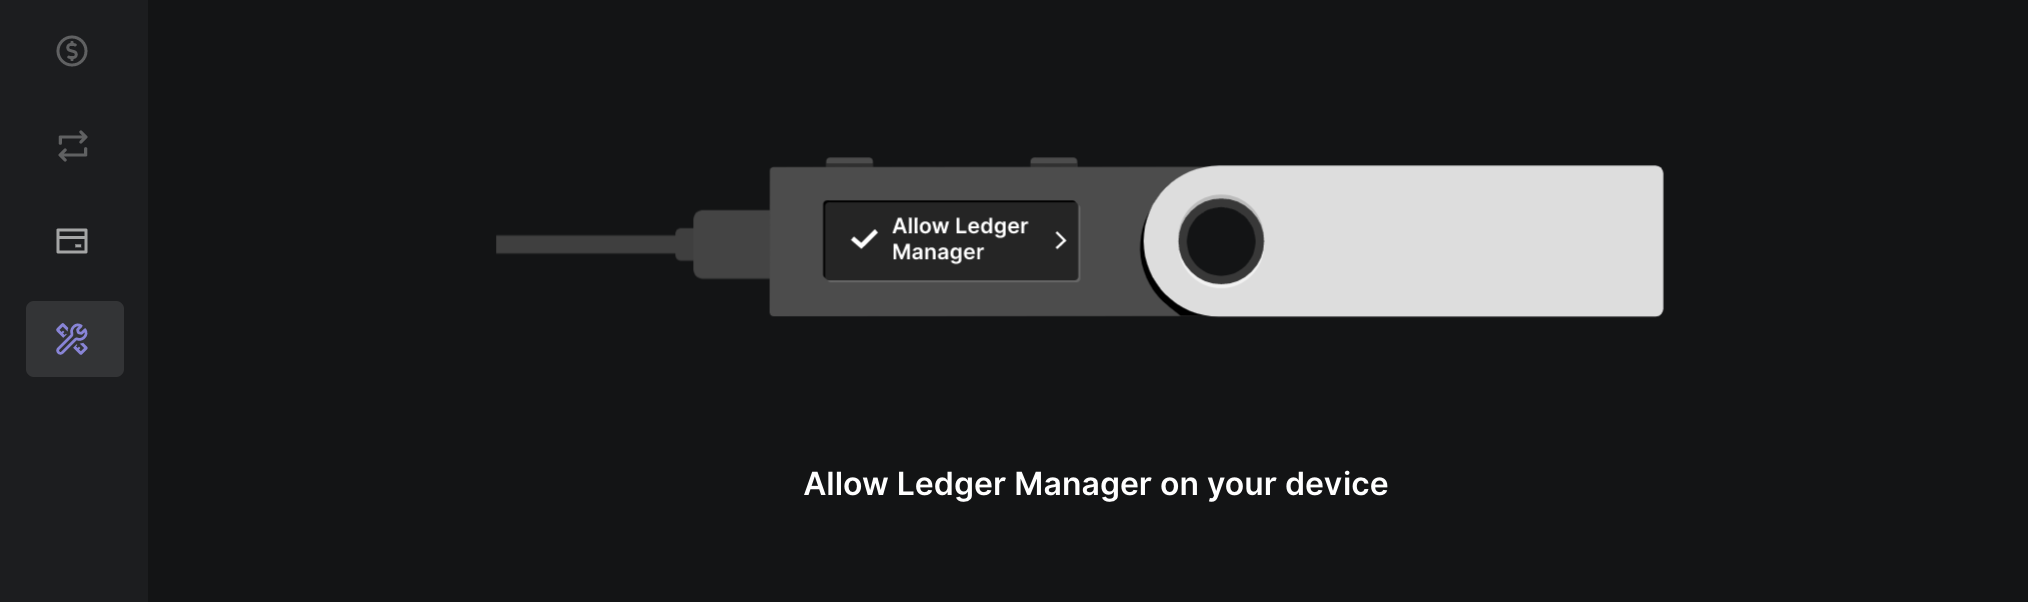 Allow Ledger